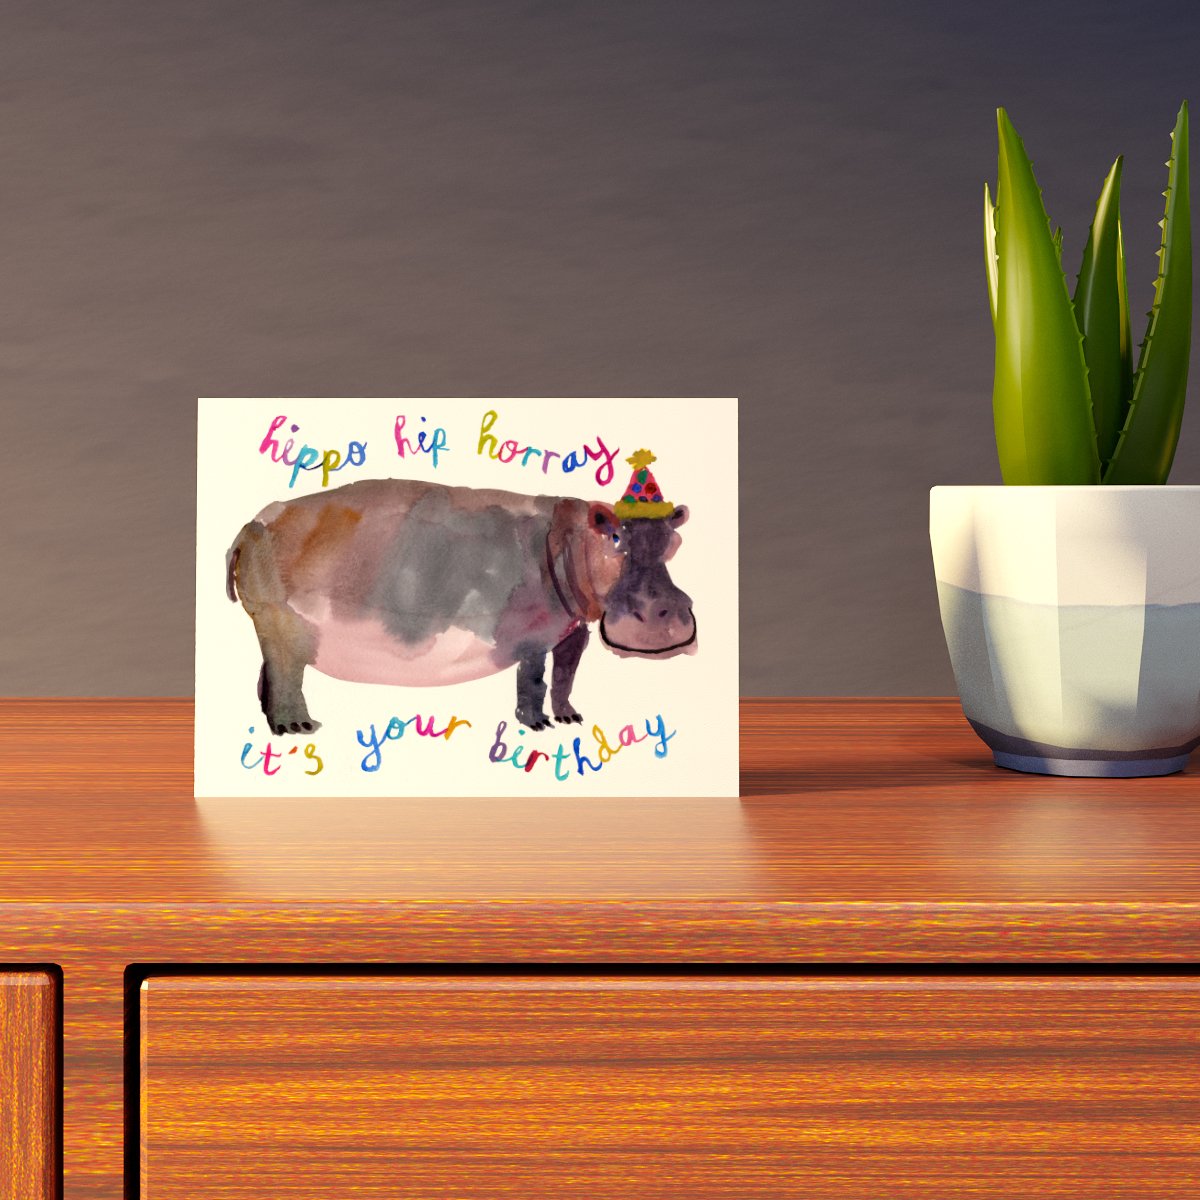 Hippo Hip Horray Card